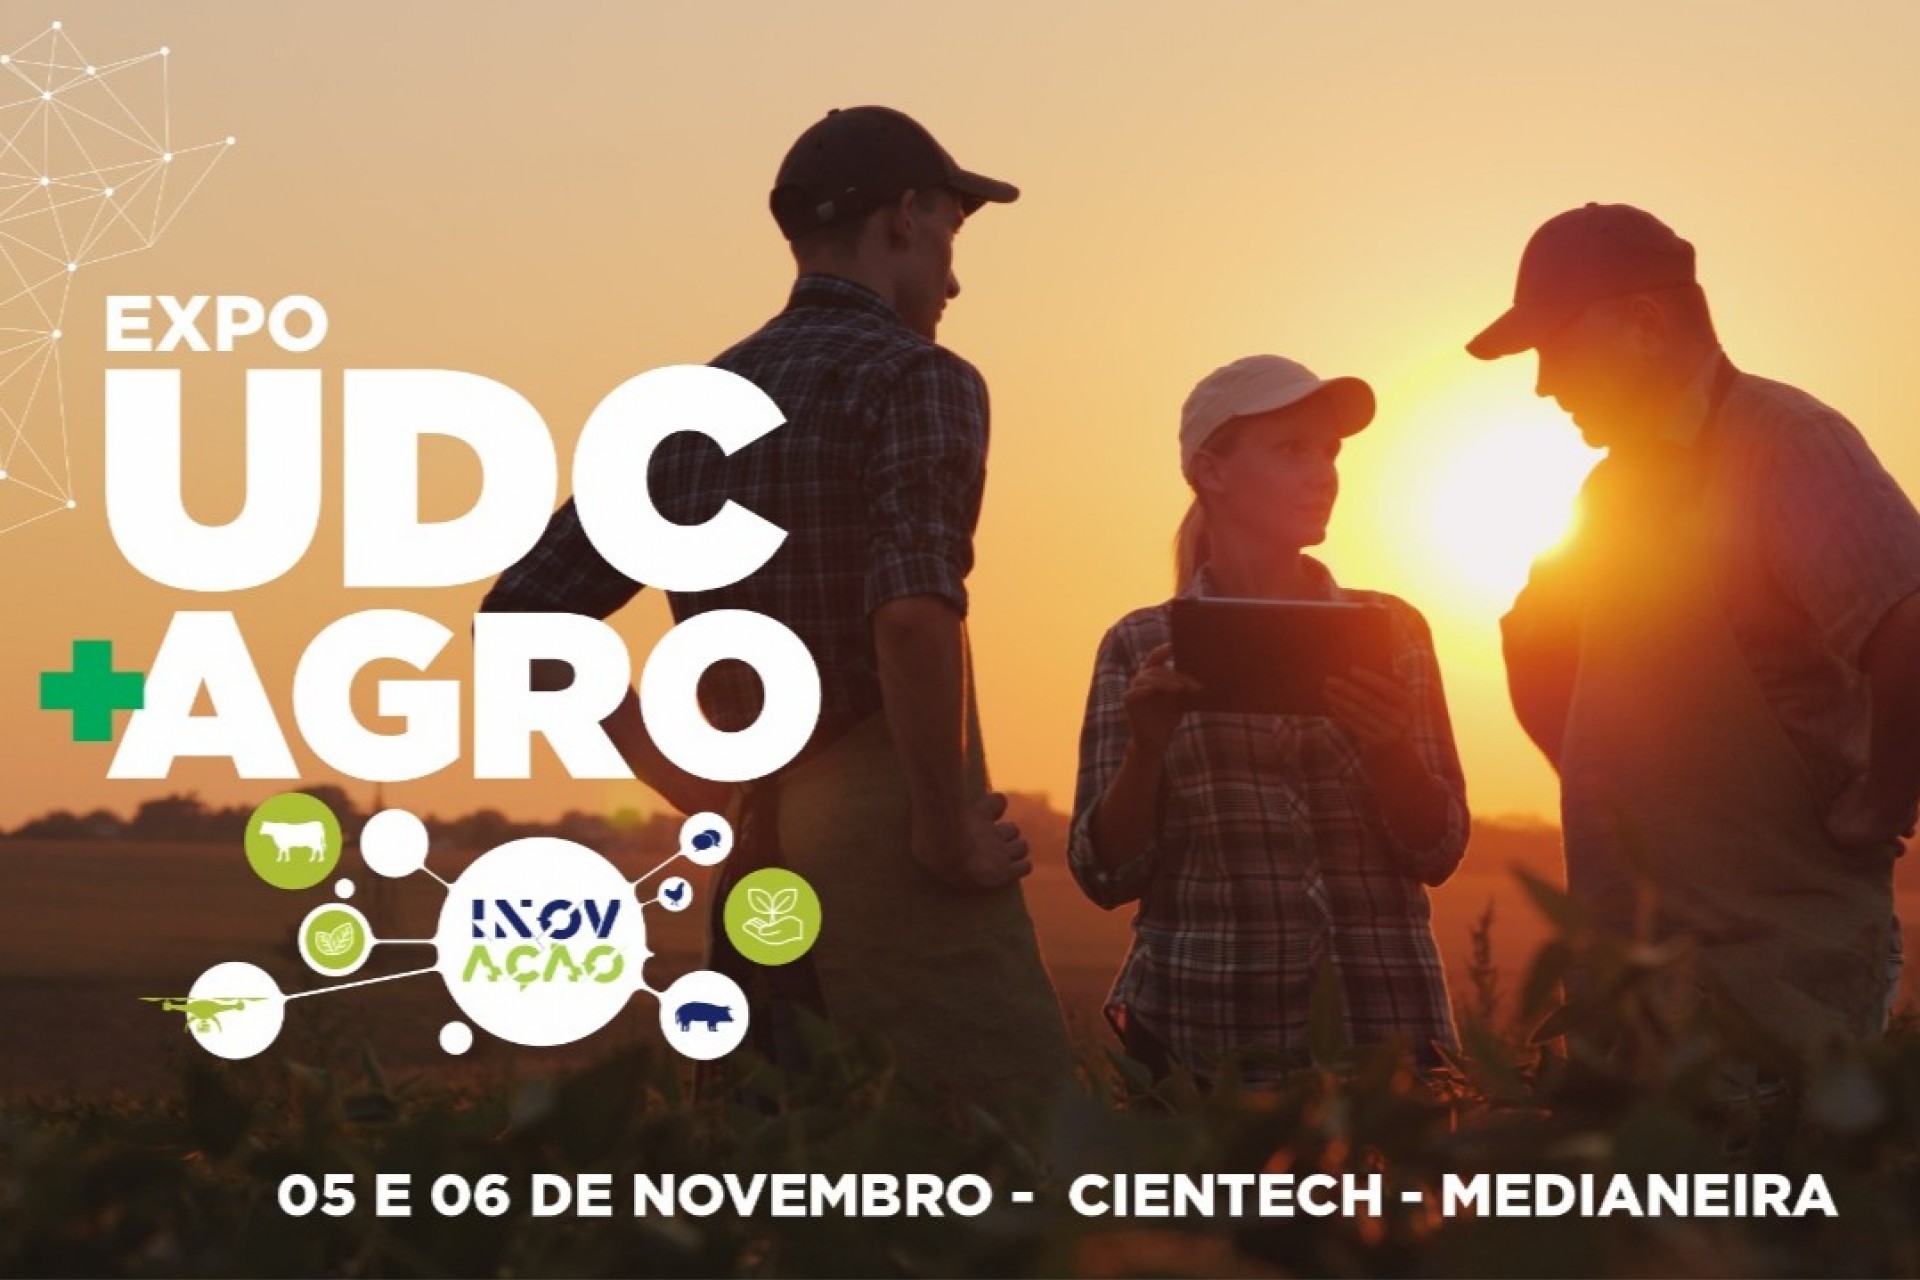 UDC Medianeira promove a EXPO UDC + AGRO Inovação para integrar academia e o Agronegócio